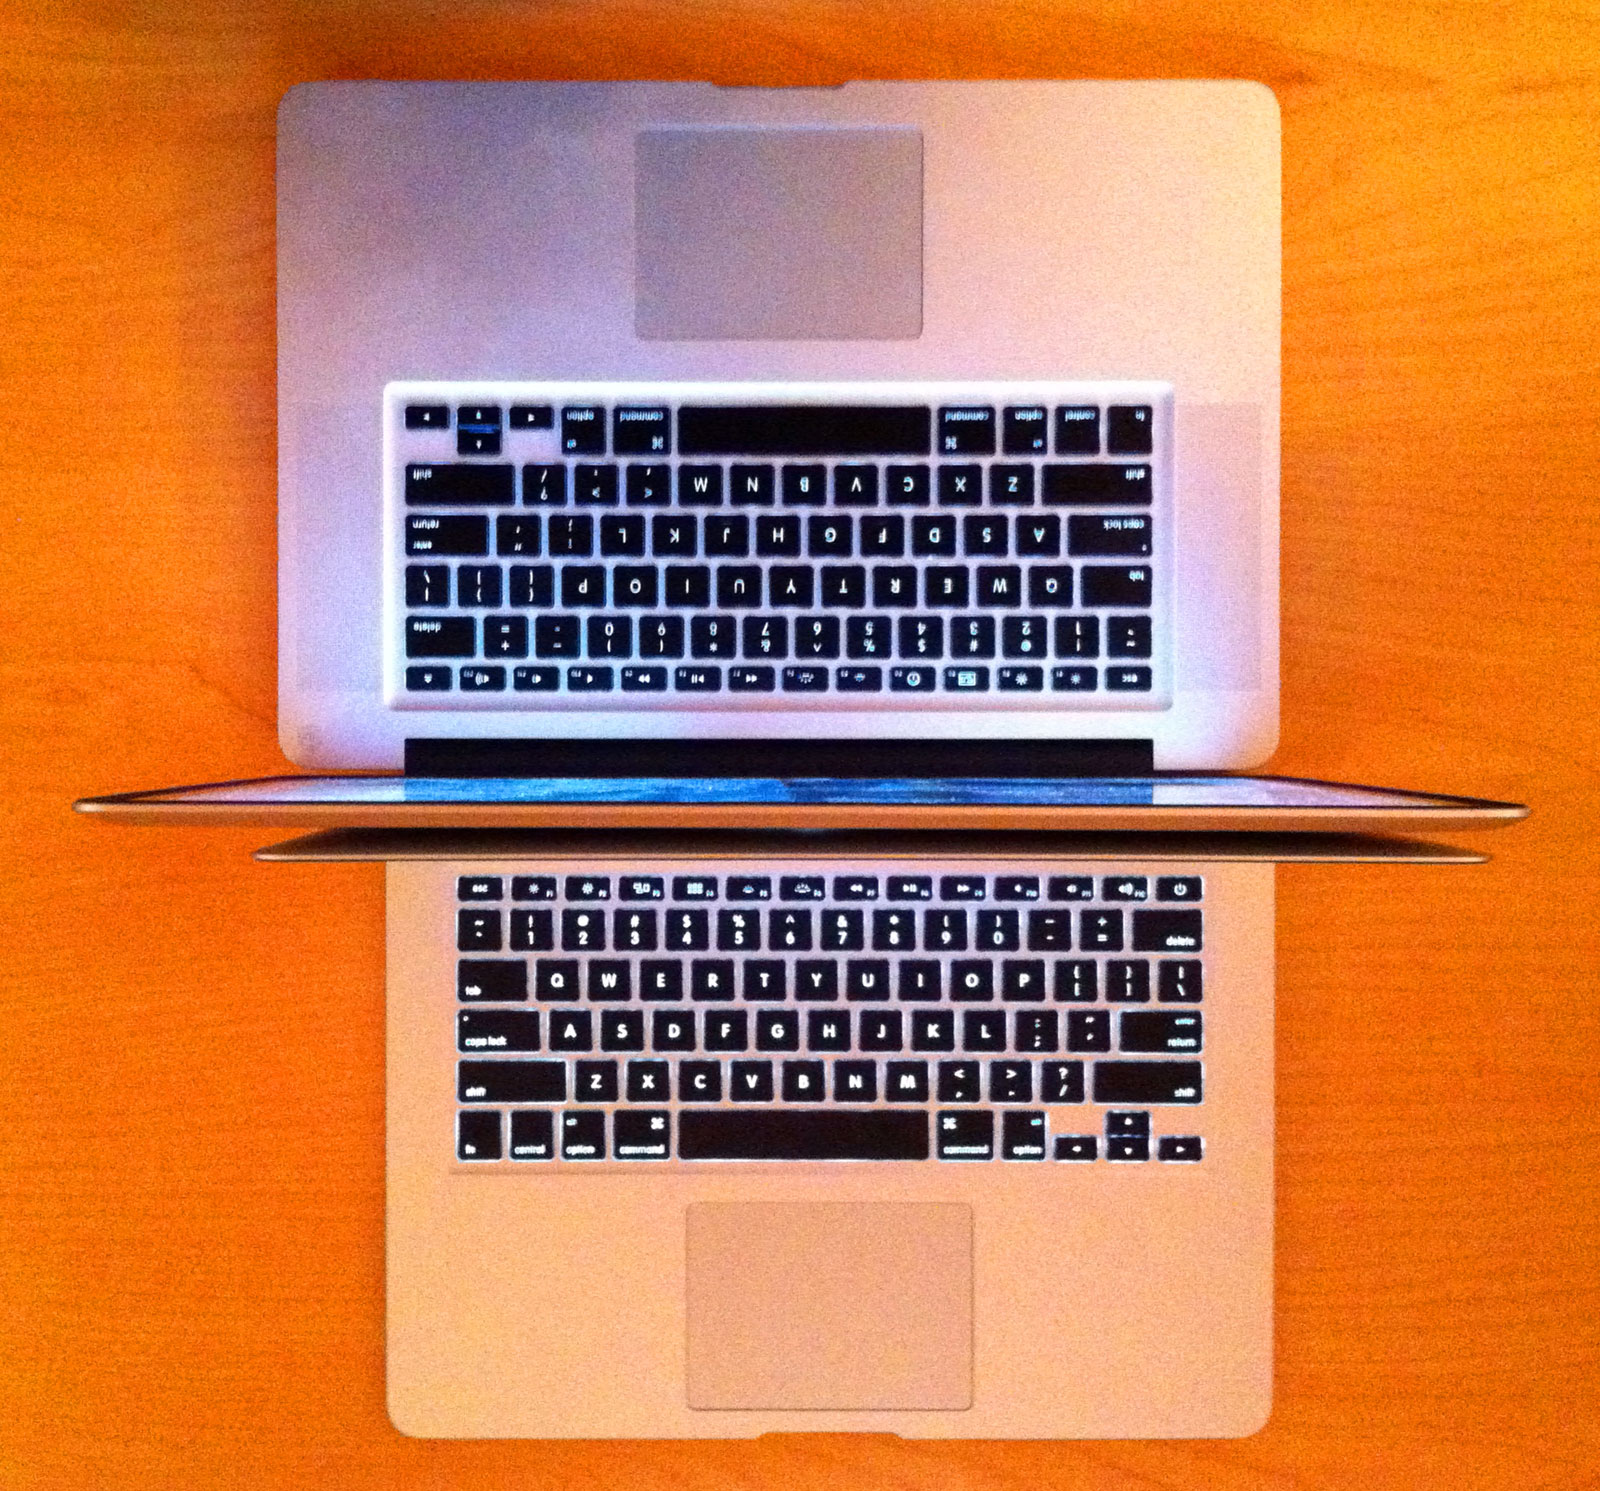 macbook pro desktop wallpaper sizes